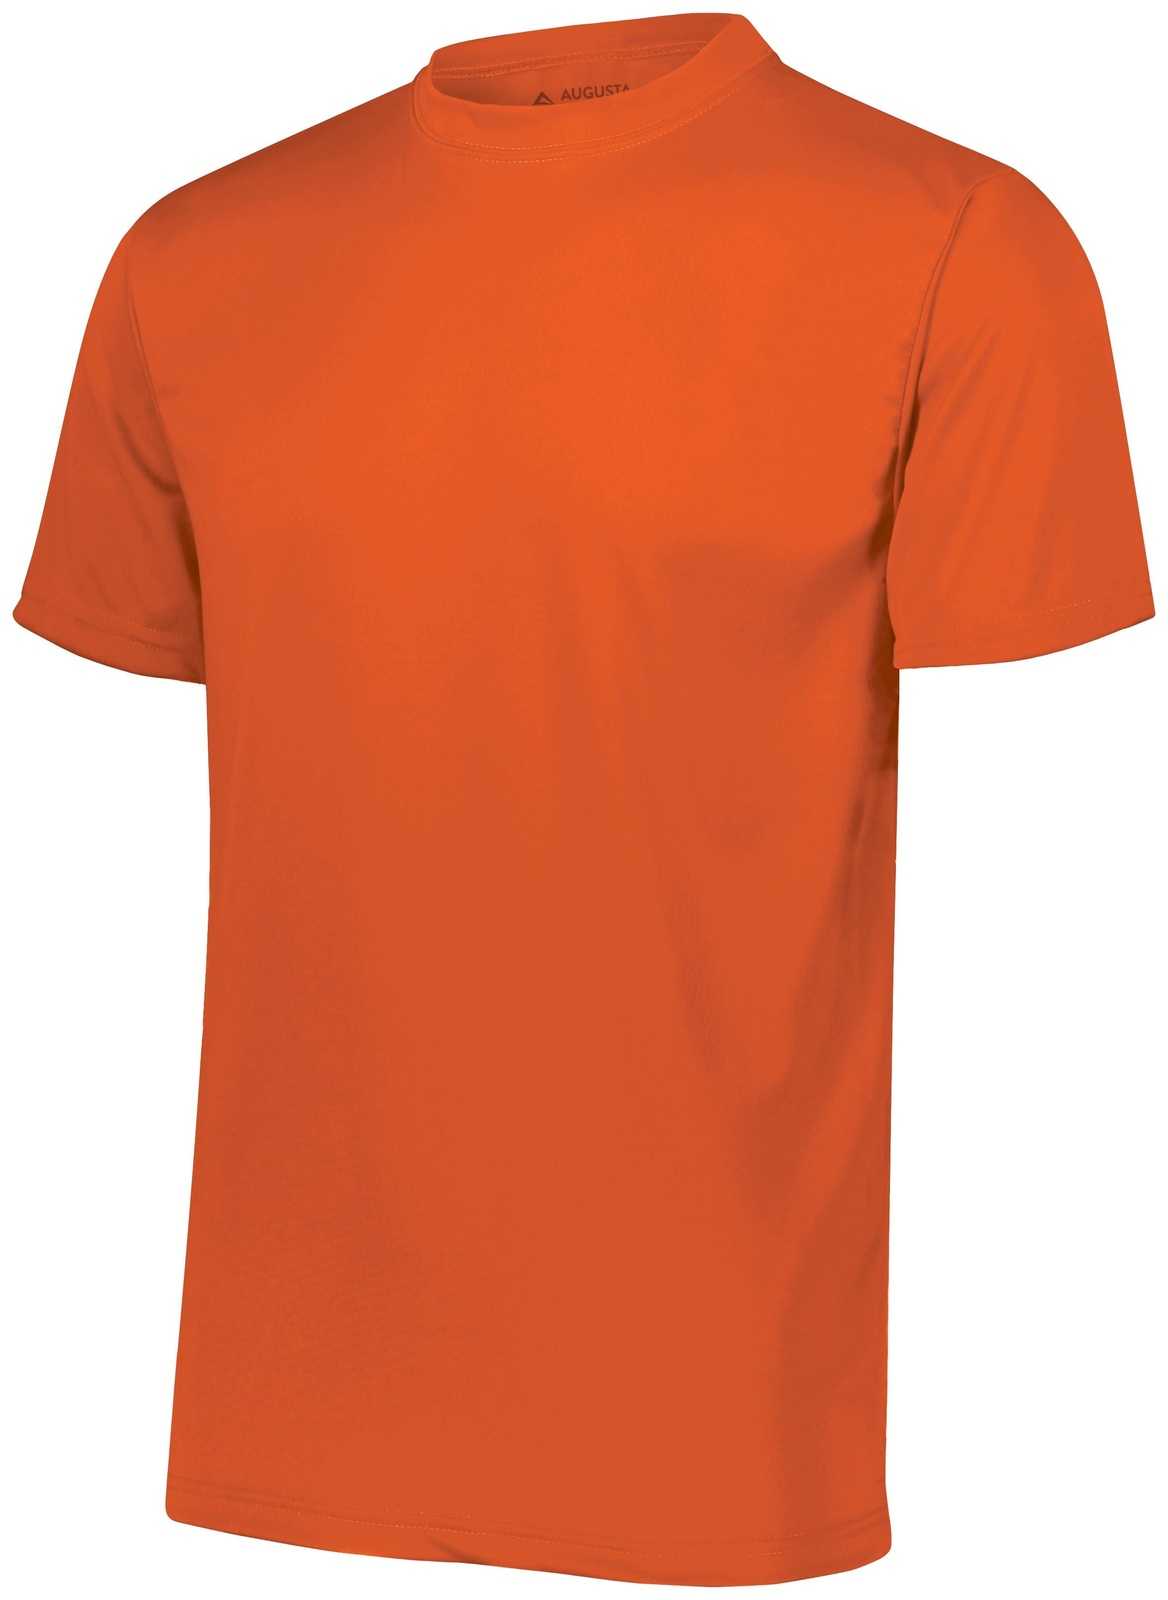 Augusta 790 NexGen Wicking T-Shirt - Orange - HIT a Double